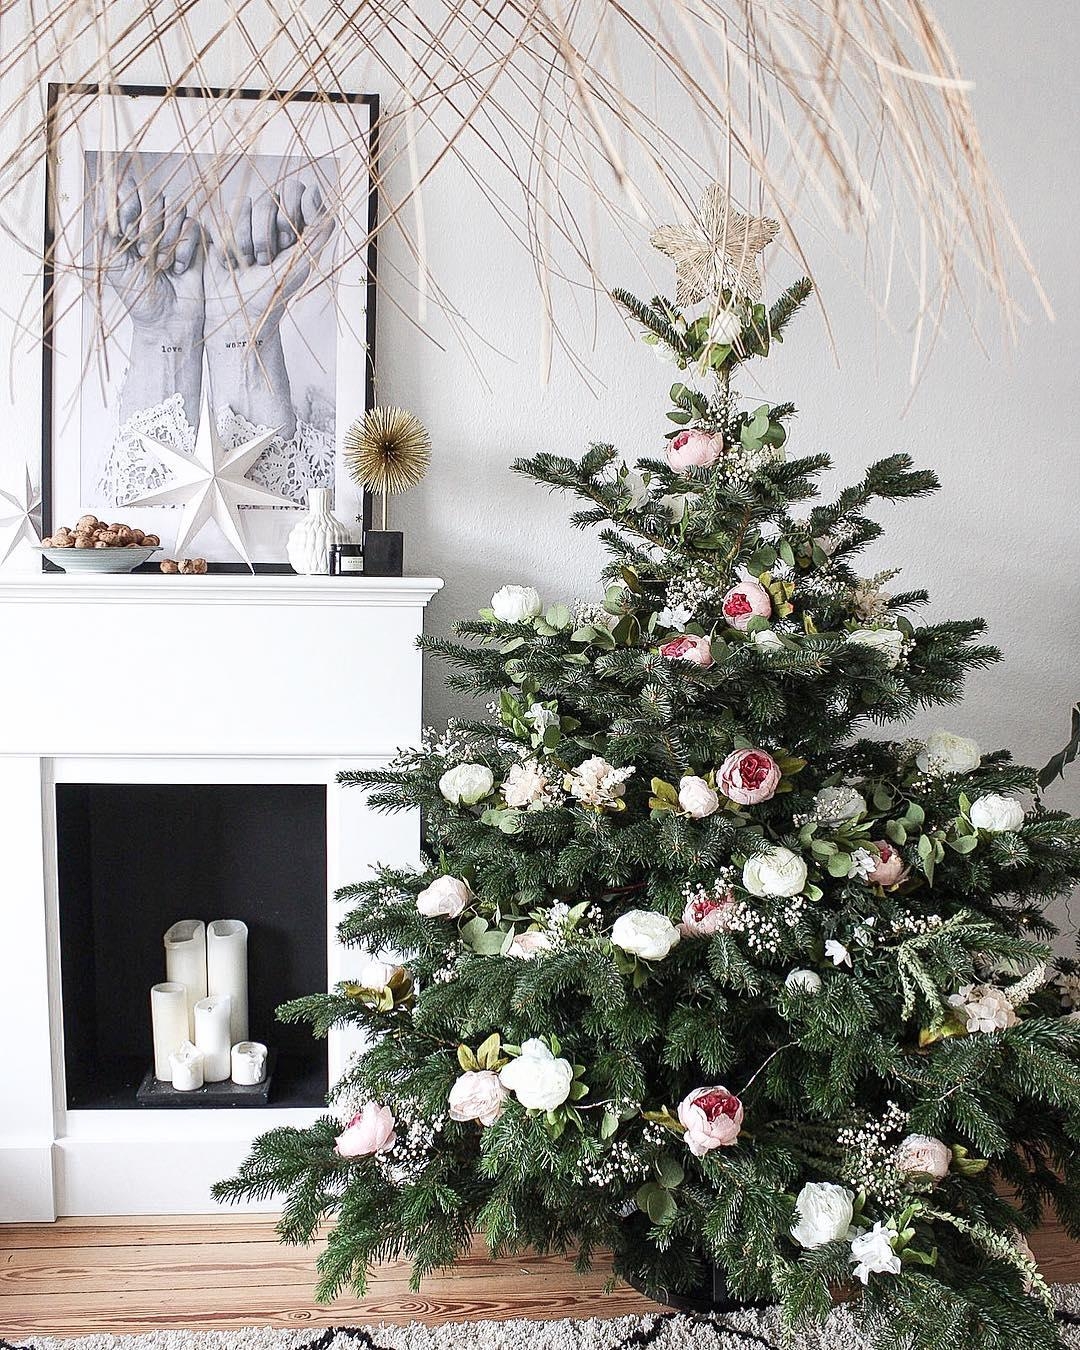 Ein ganz spezieller #Weihnachtsbaum steht bei uns im #Wohnzimmer.
#DIY #blumendeko #xmas #weihnachtsdeko #deko